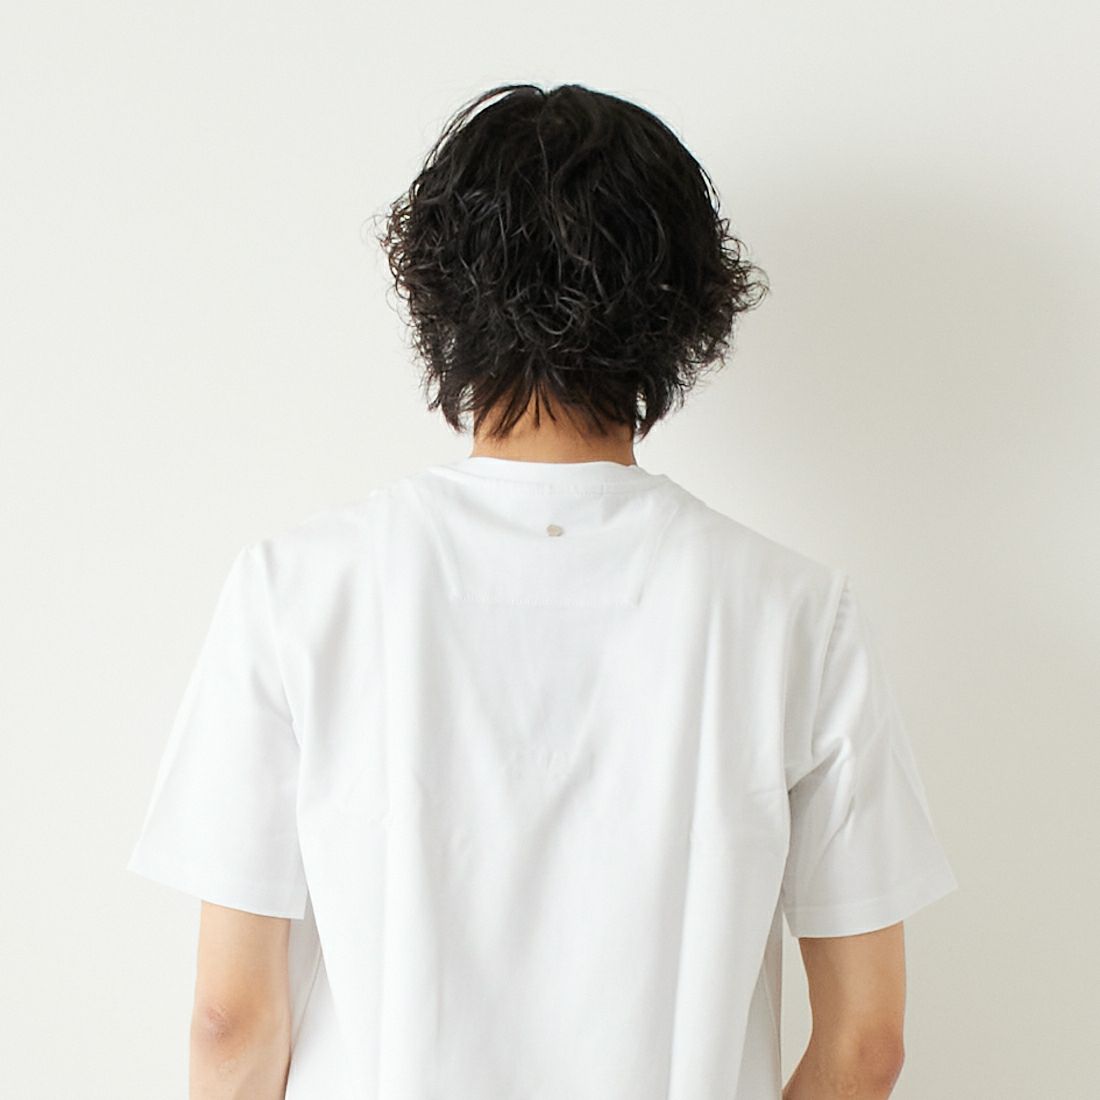 BALR. [ボーラー] ブラックレーベルクラシックストレートTシャツ [B10003] WHITE &&モデル身長：182cm 着用サイズ：L&&